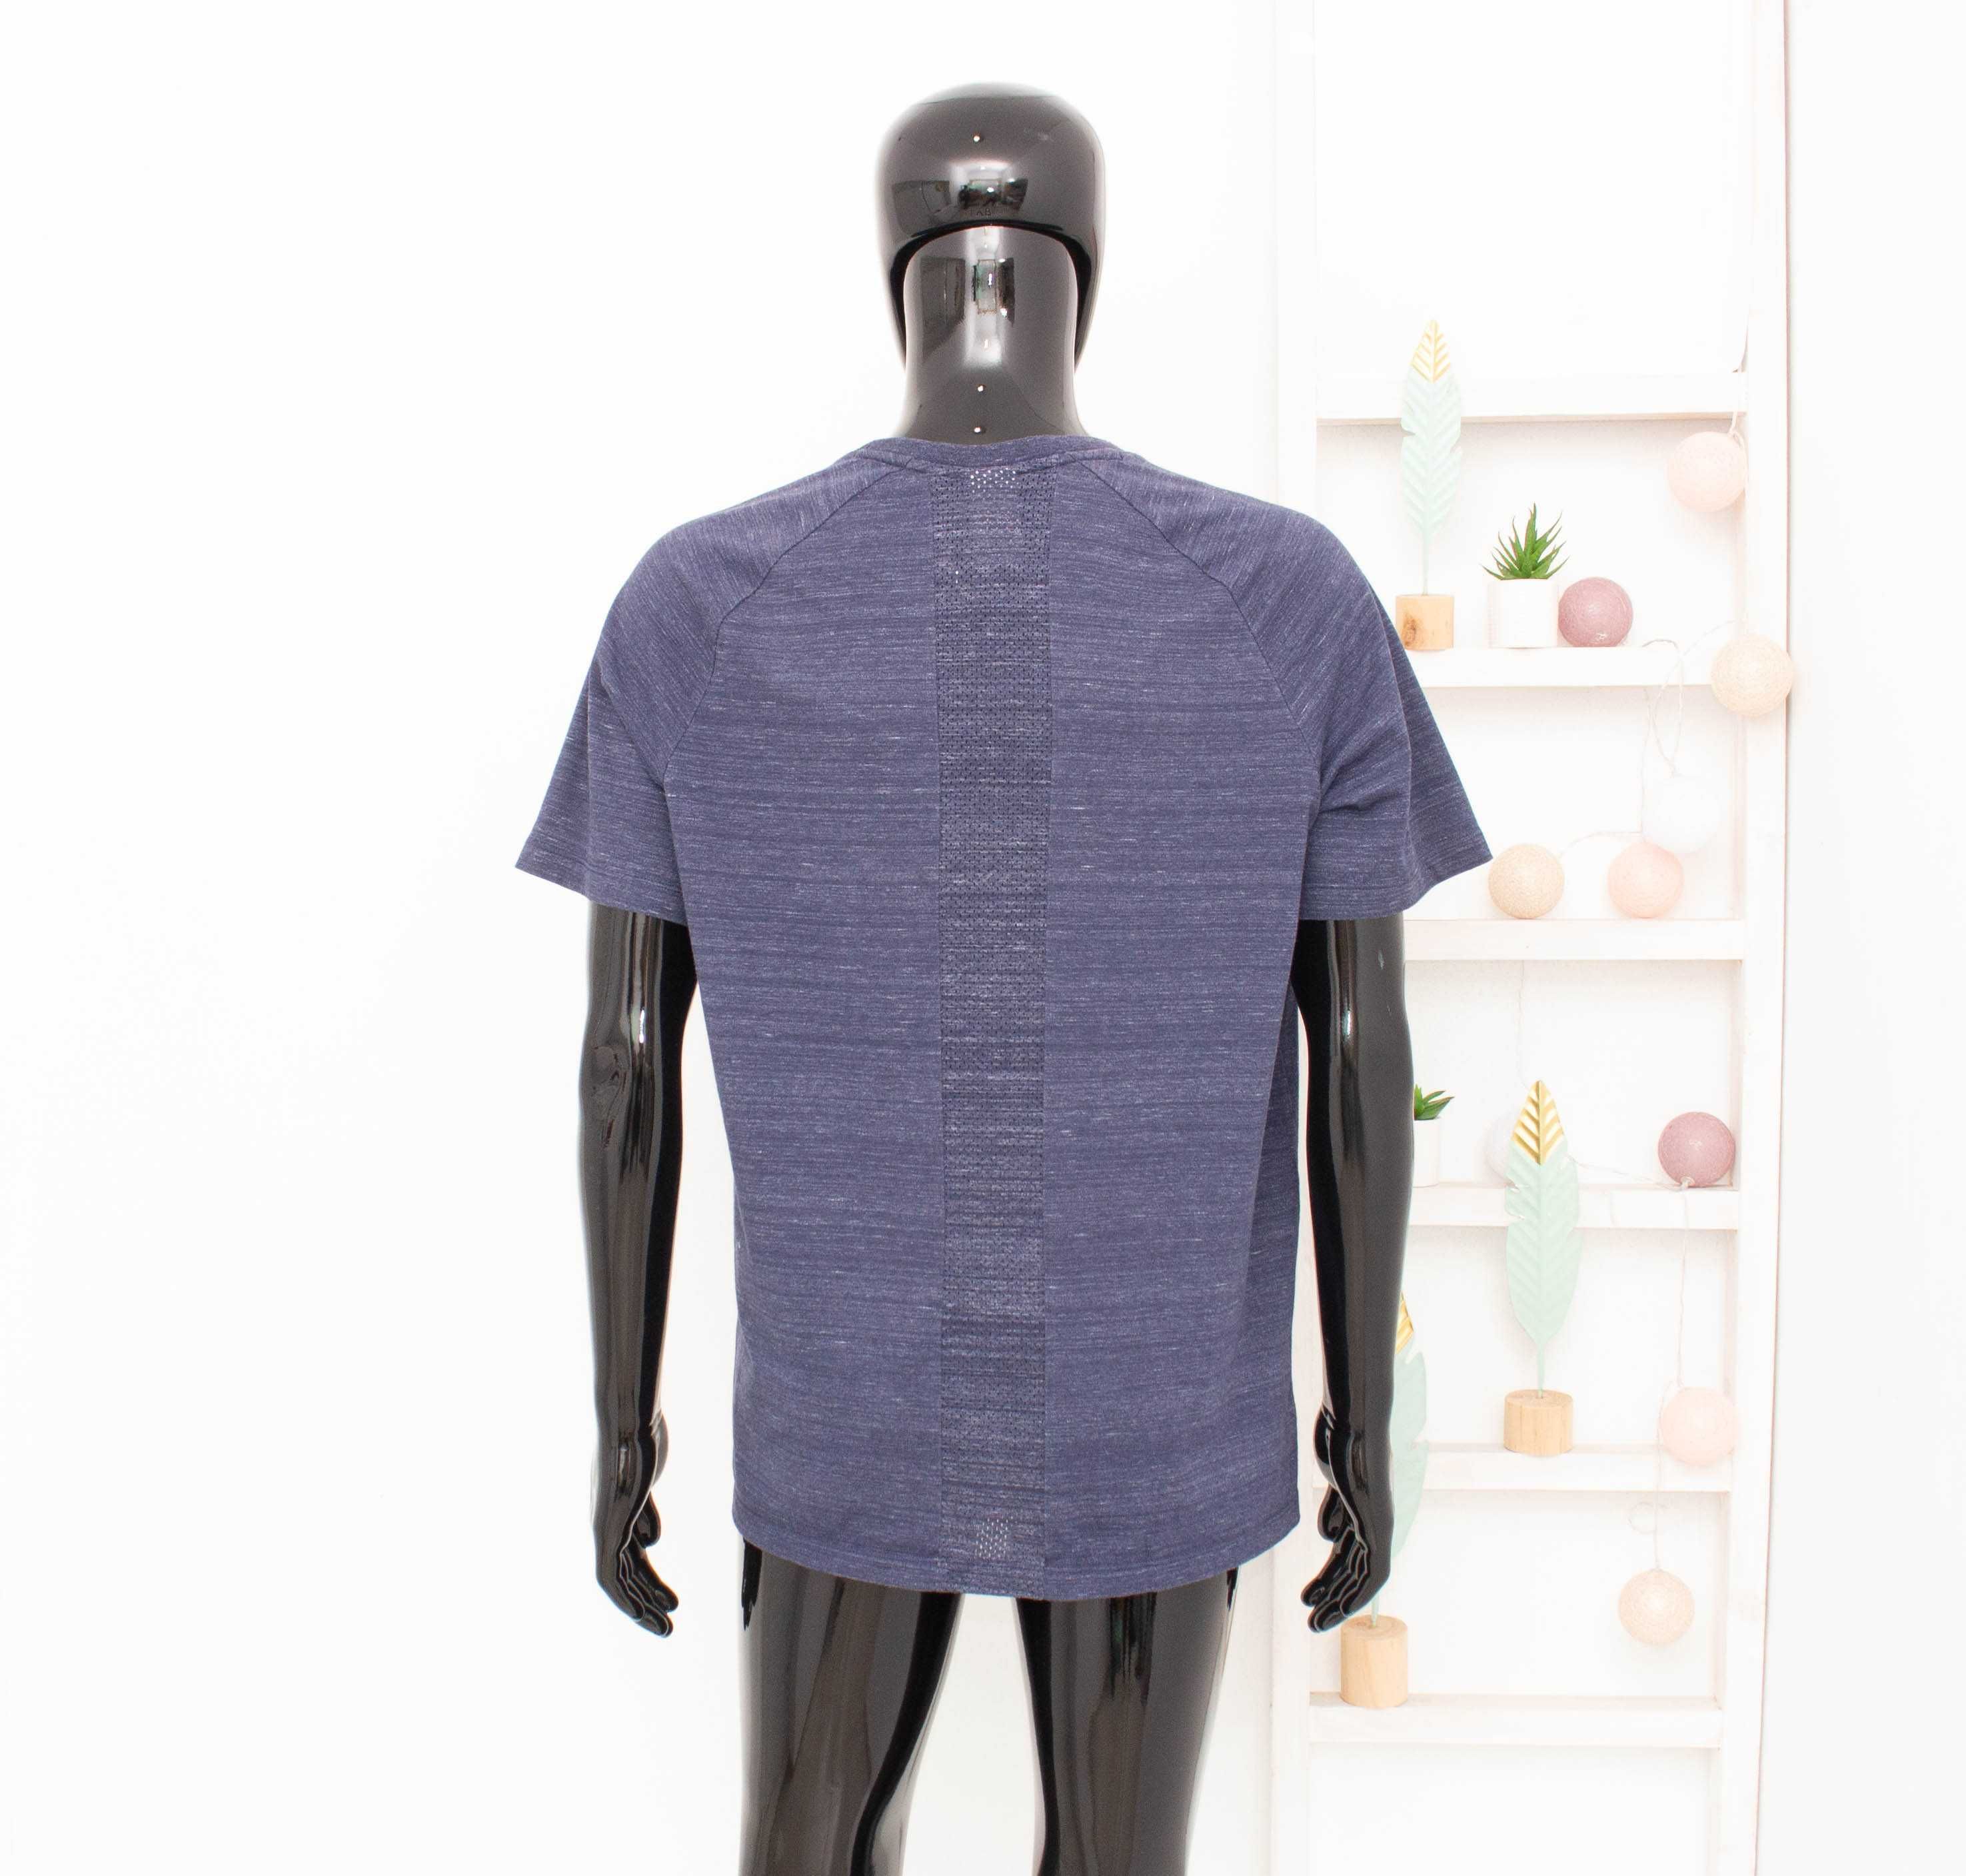 Nike Оригинална мъжка тениска син меланж памук/полиестер М